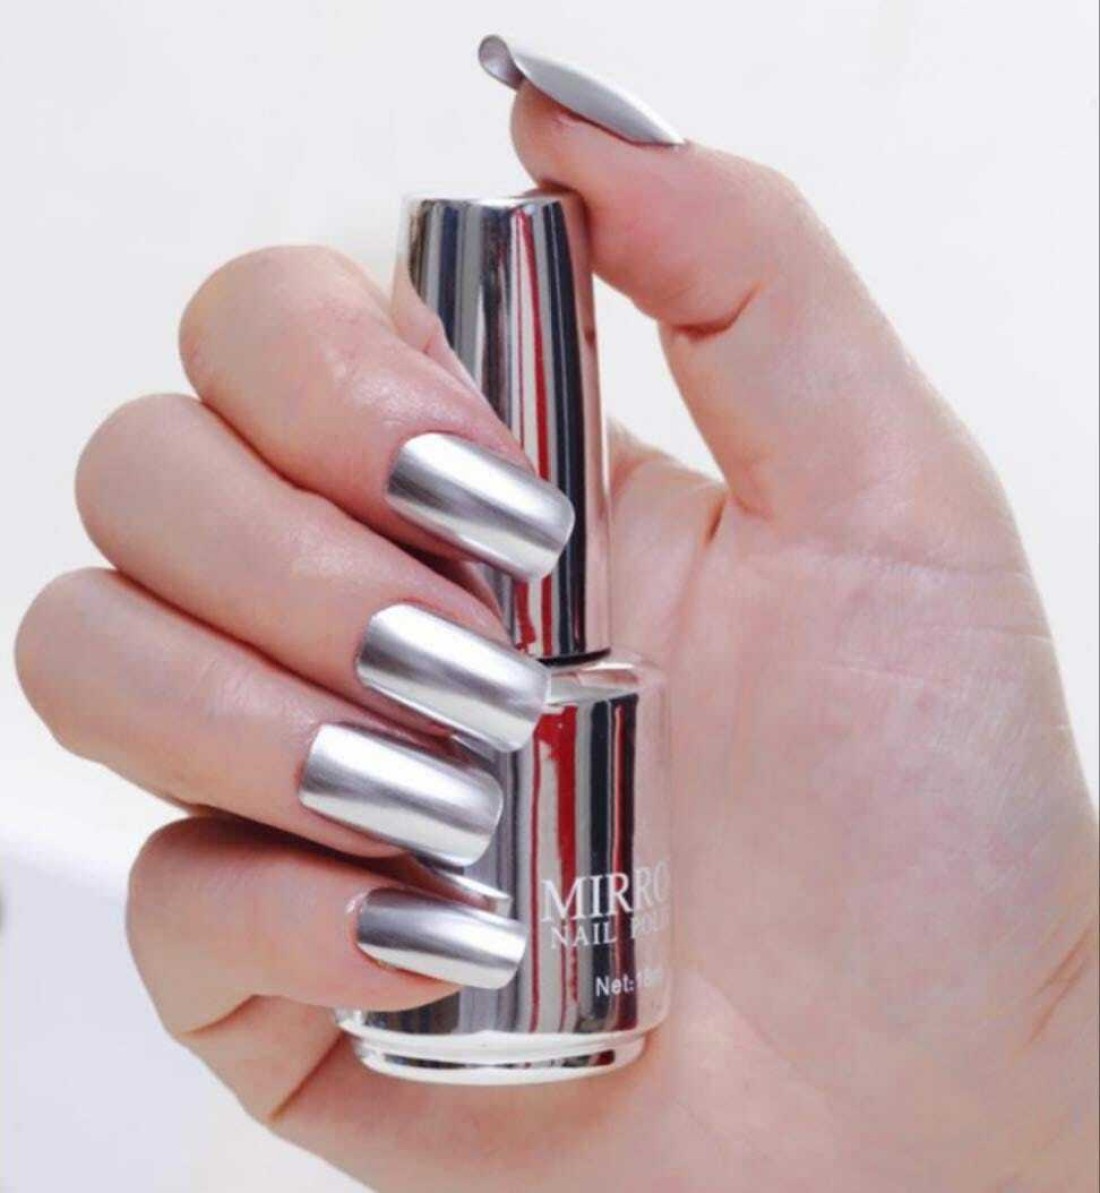 Huda beauty mirror nail polish swatch || nail art Amanda - YouTube